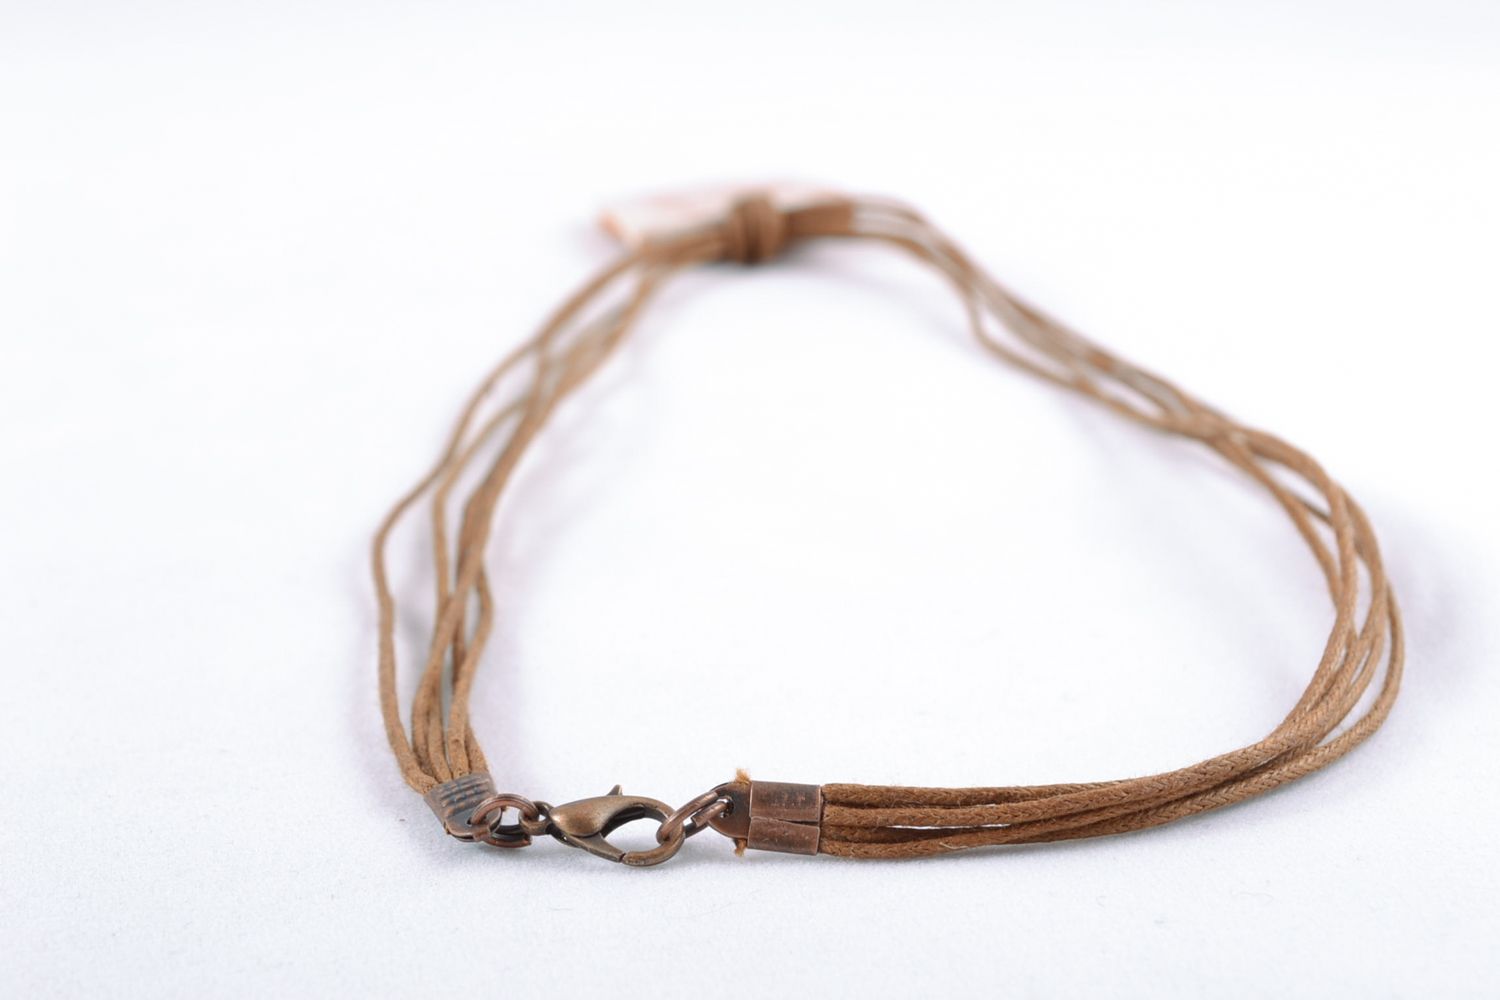 Rectangular ceramic pendant with cord photo 5